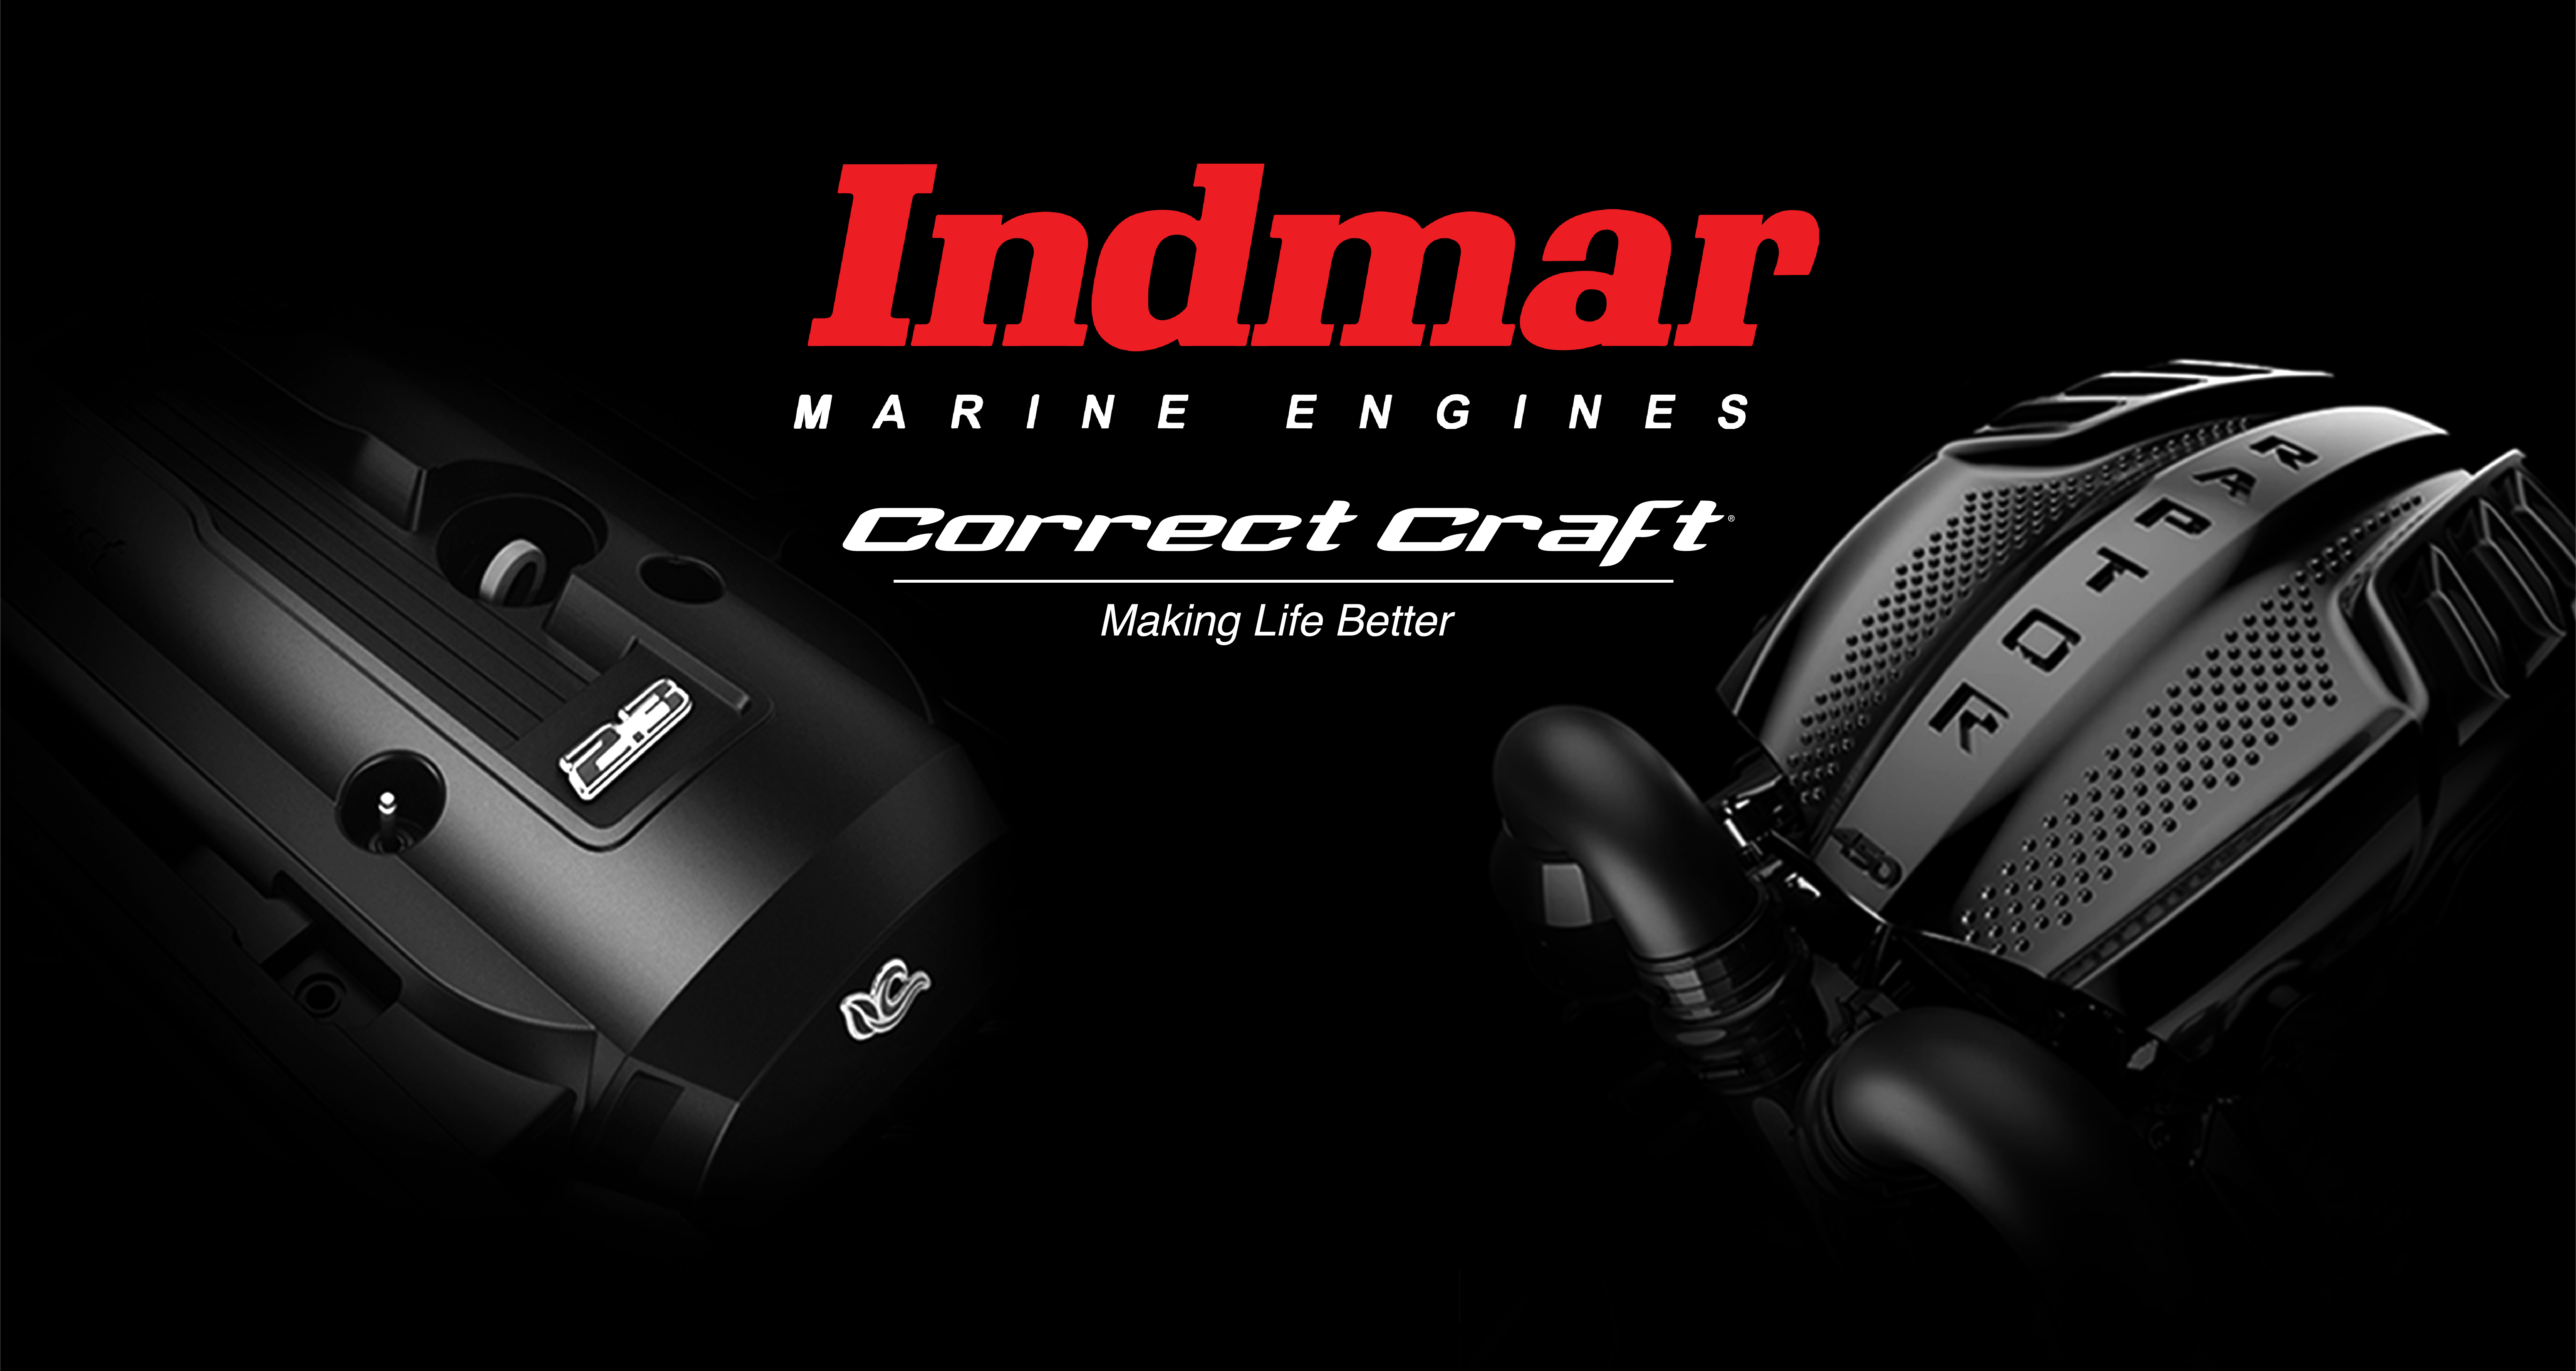 Correct Craft acquires Indmar Marine Engines